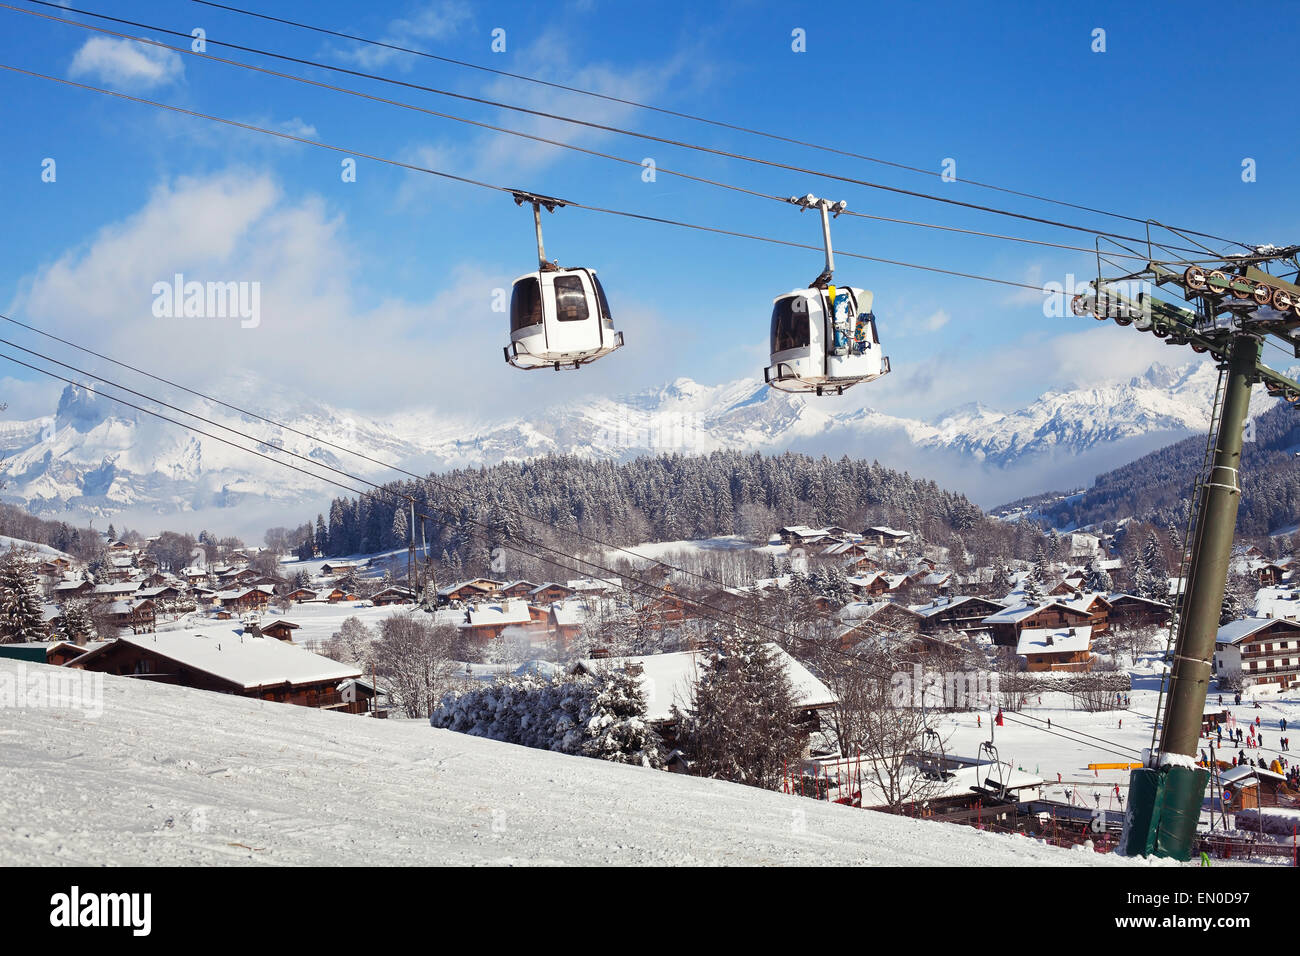 ski resort in Alps, Megeve village, France Stock Photo